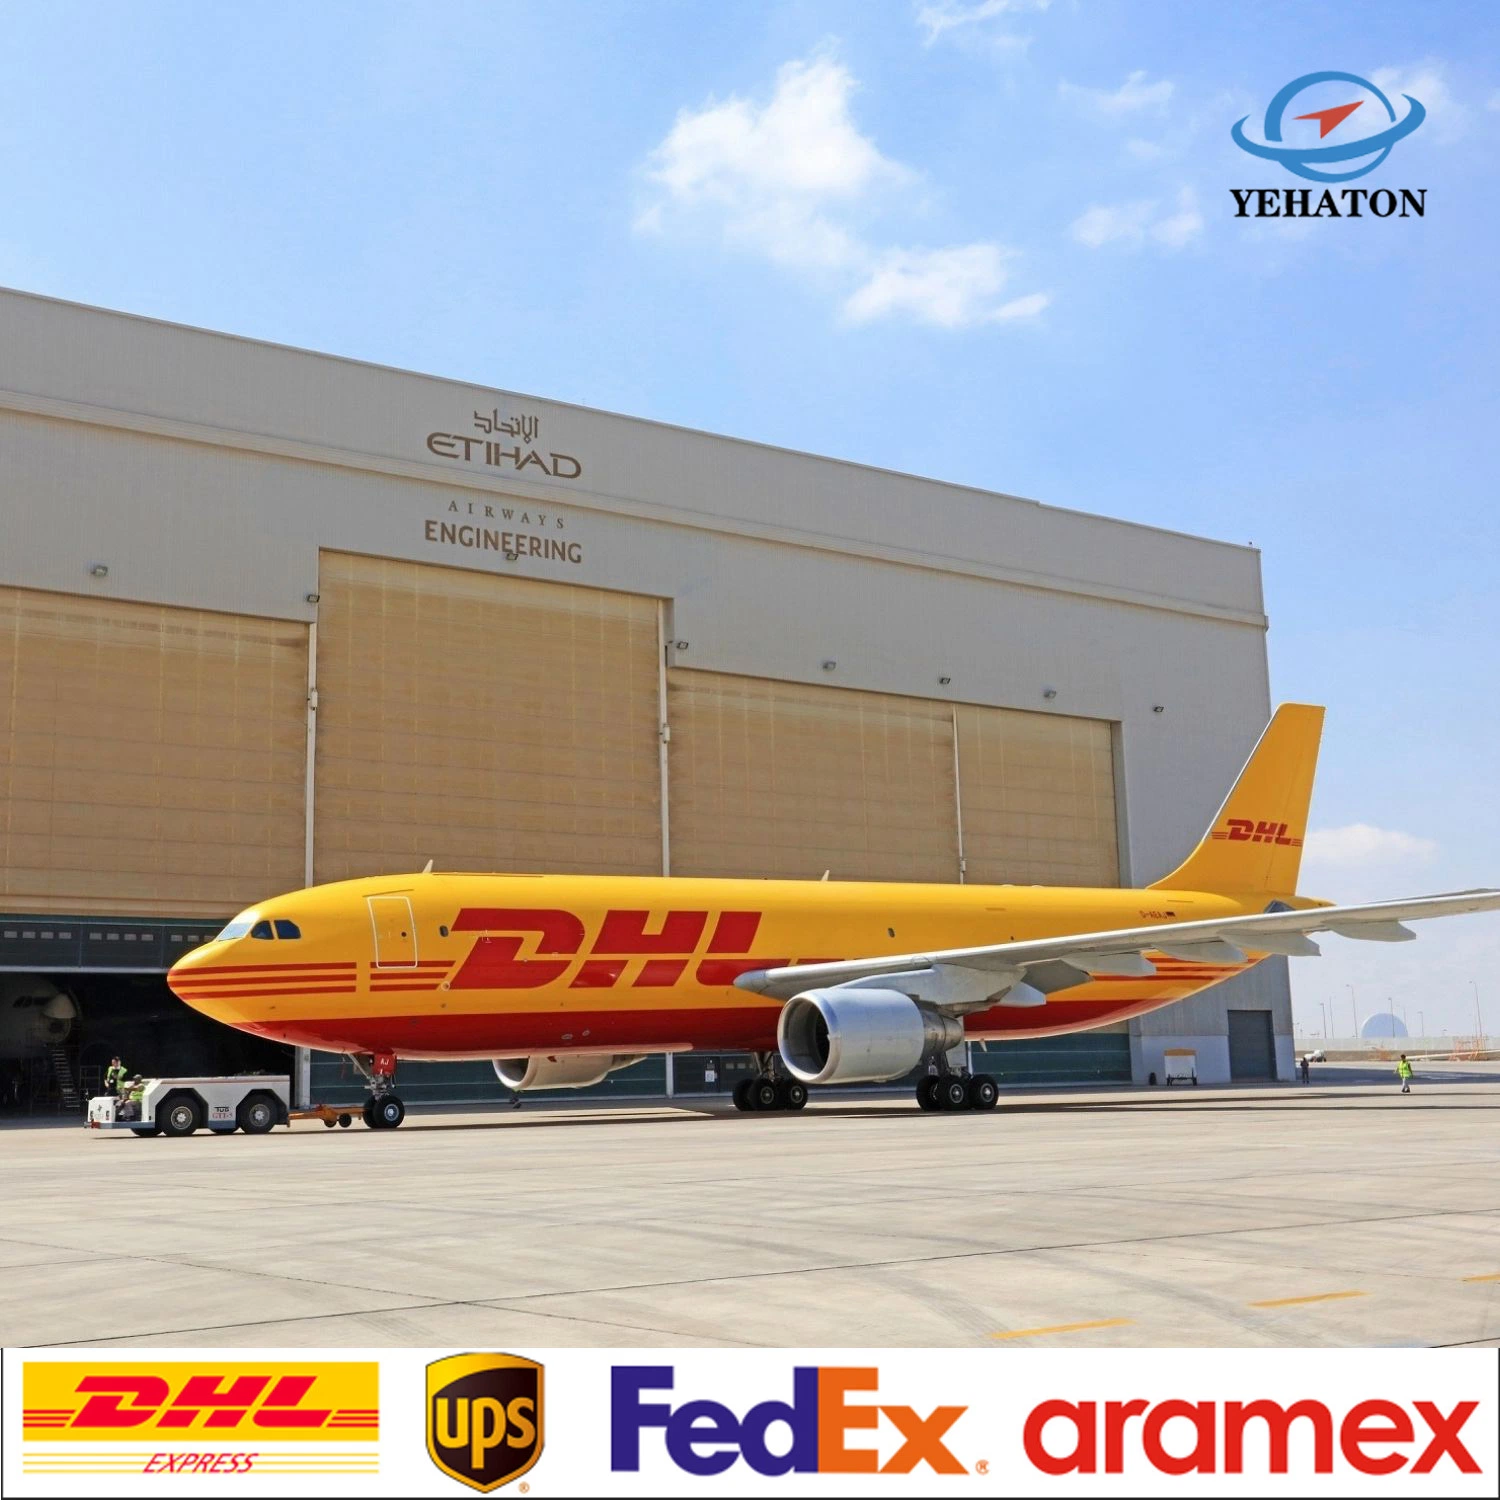 Zuverlässiger Großhandel/Lieferant Import von China nach Europa Australien, Air Cargo Ship Price Alibaba Express Deliverydrop Versandhändler Logistik Service Spediteur